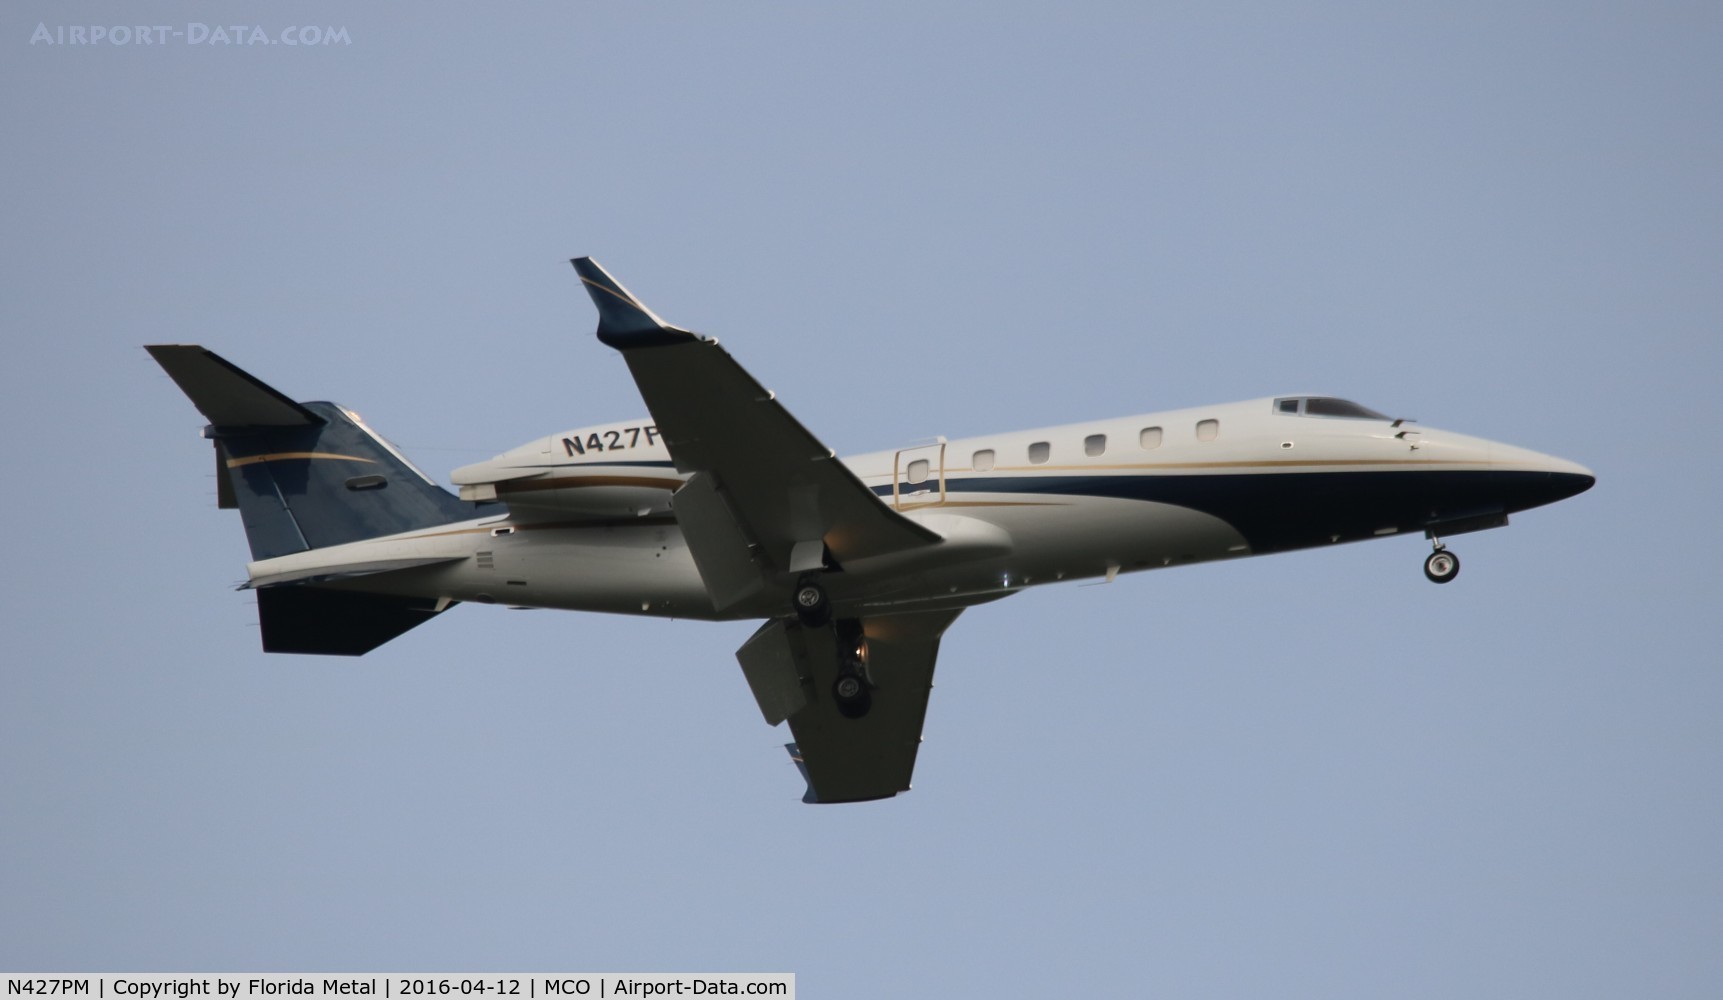 N427PM, 2001 Learjet 60 C/N 60-210, Lear 60